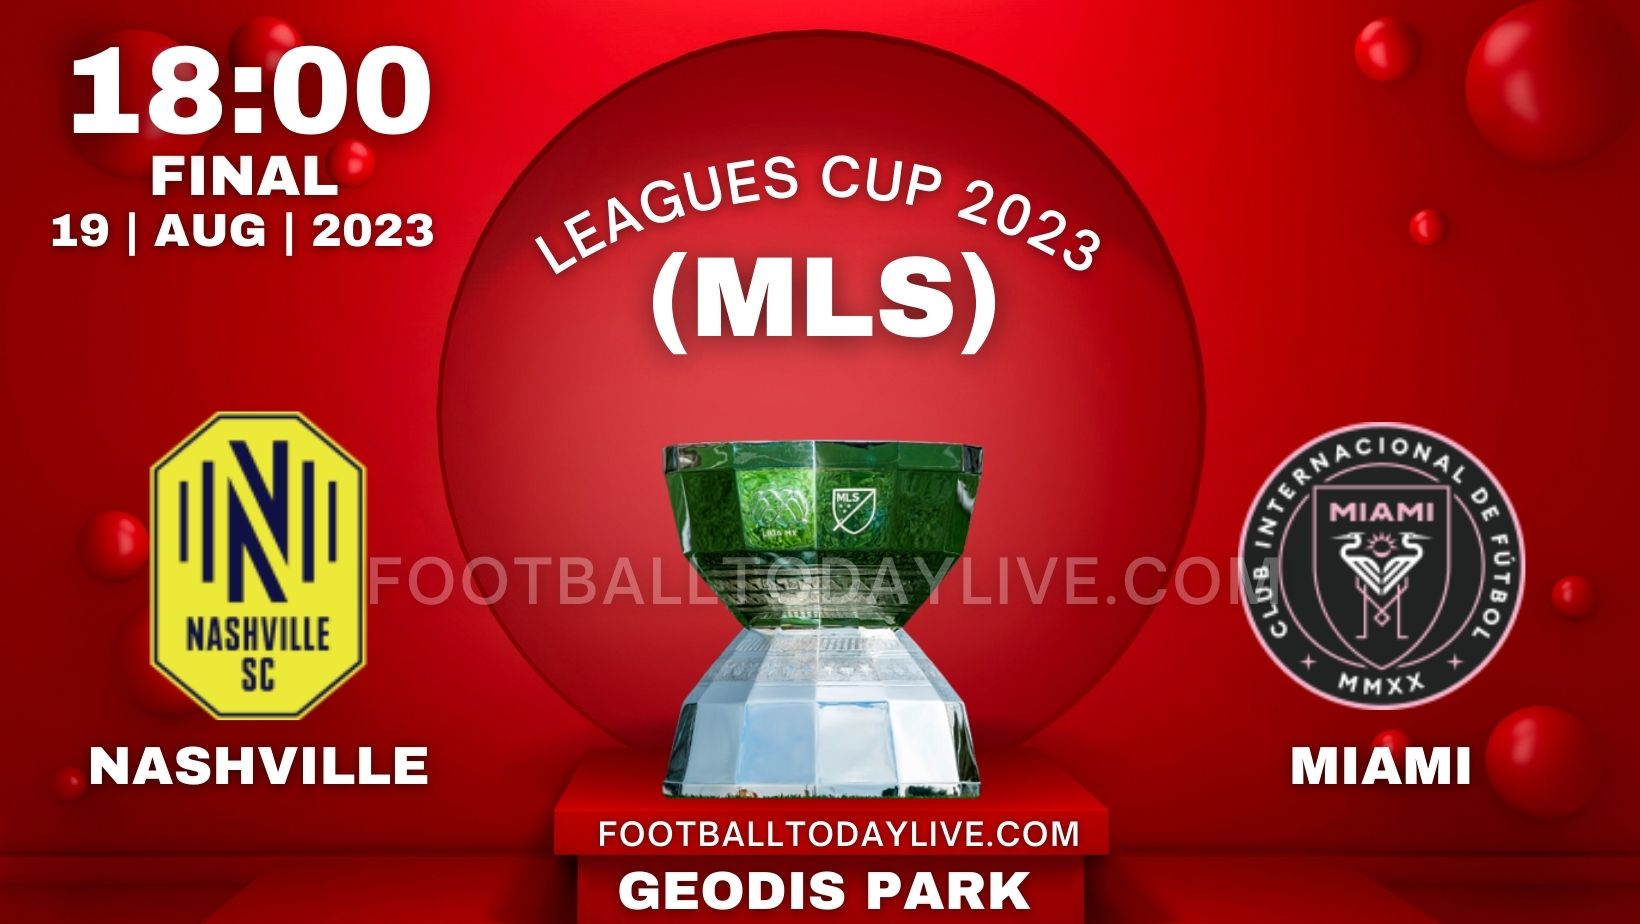 Inter Miami vs Nashville Leagues Cup Final 2023 Live Stream